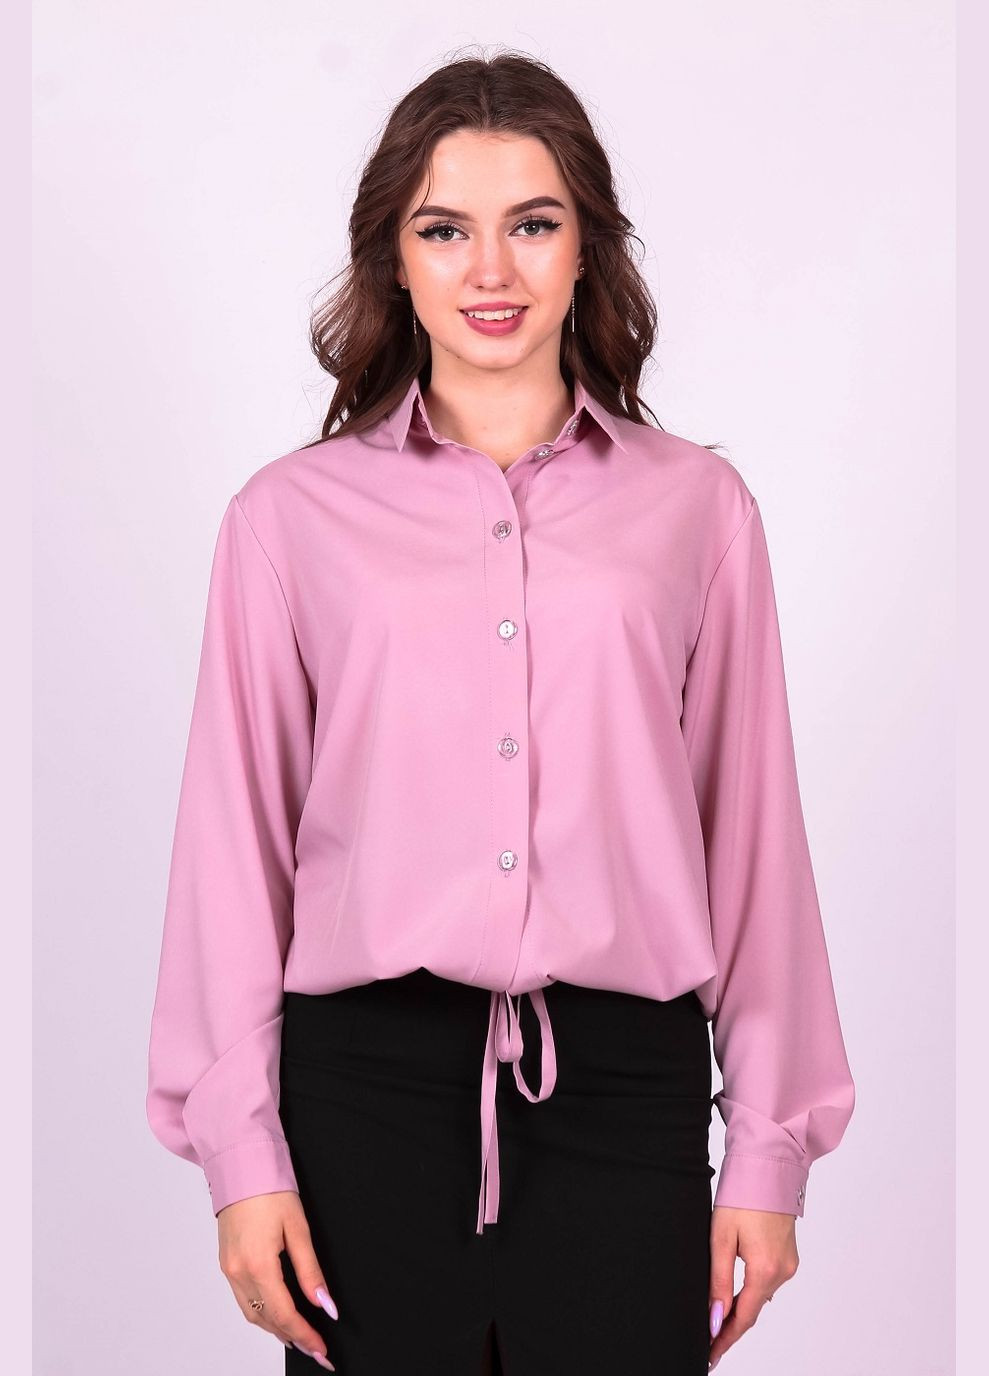 Розовая демисезонная блузка женская 057 однотонный софт розовая Актуаль